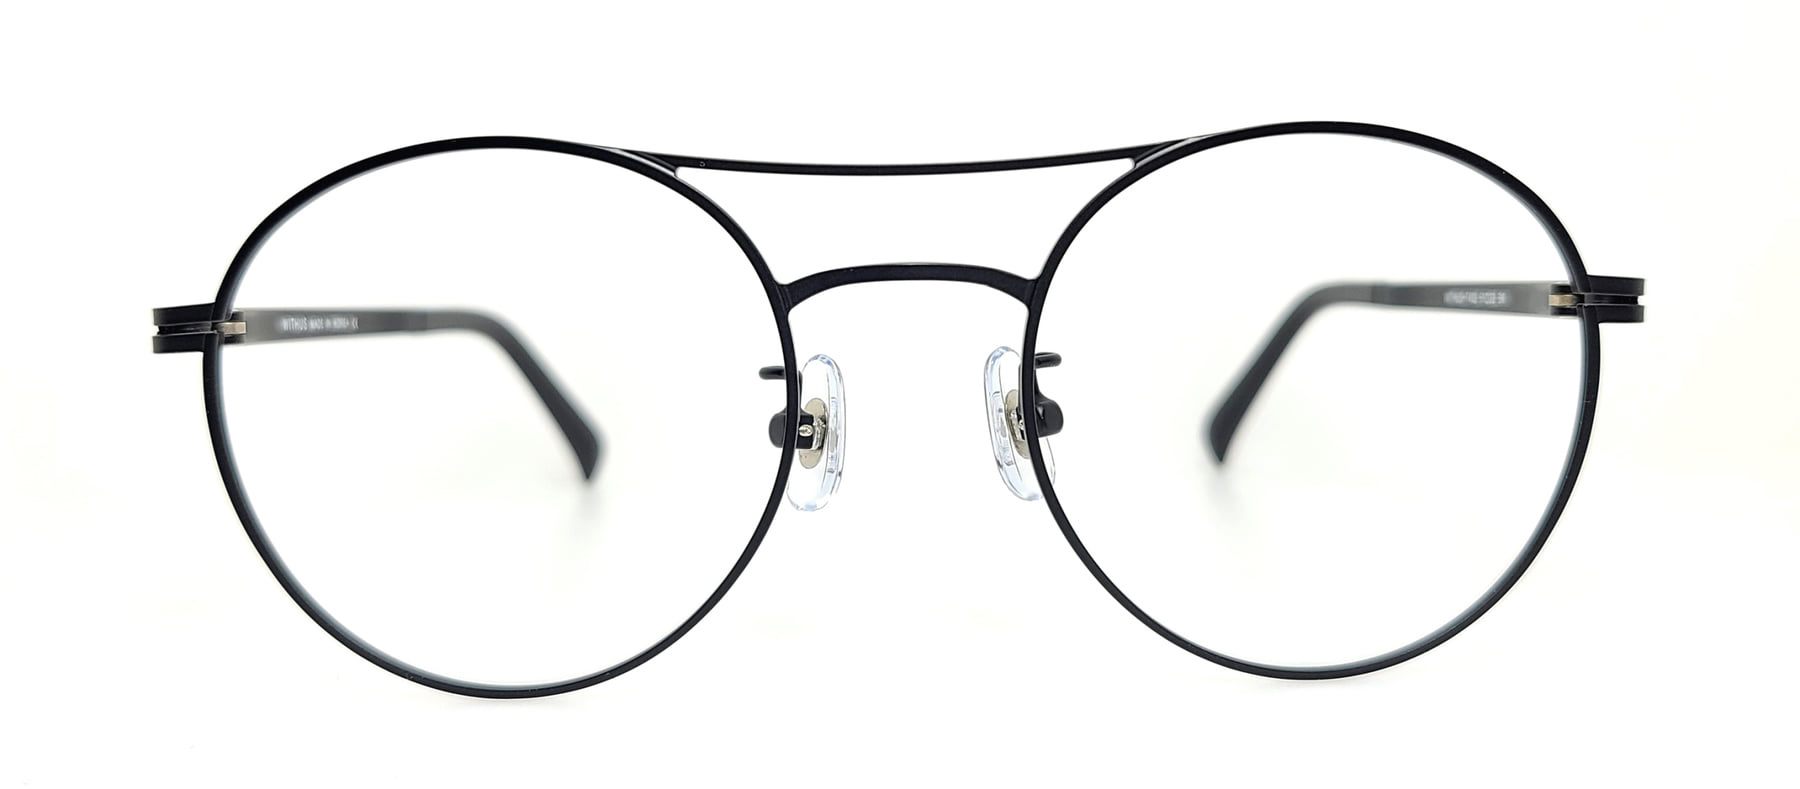 WITHUS-7432, Korean glasses, sunglasses, eyeglasses, glasses